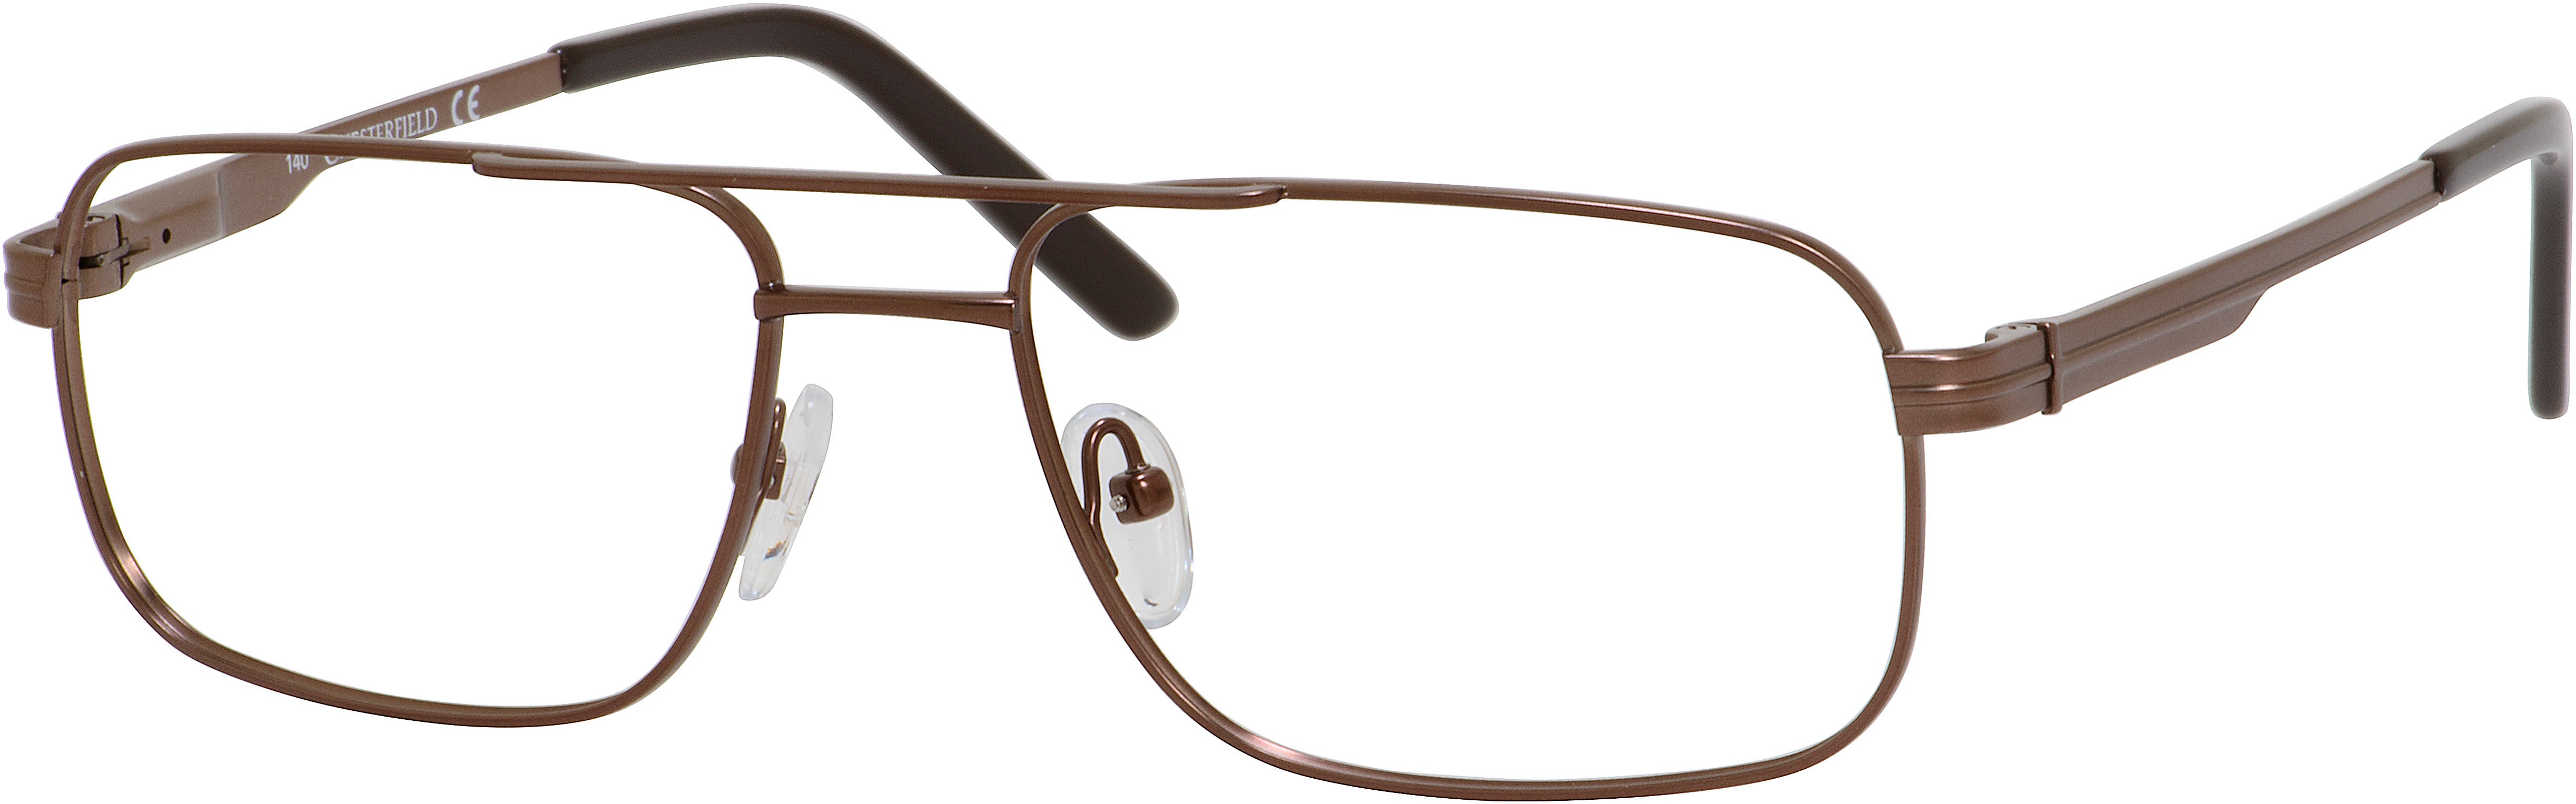  Chesterfield 866/T Rectangular Eyeglasses 01J0-01J0  Brown (00 Demo Lens)